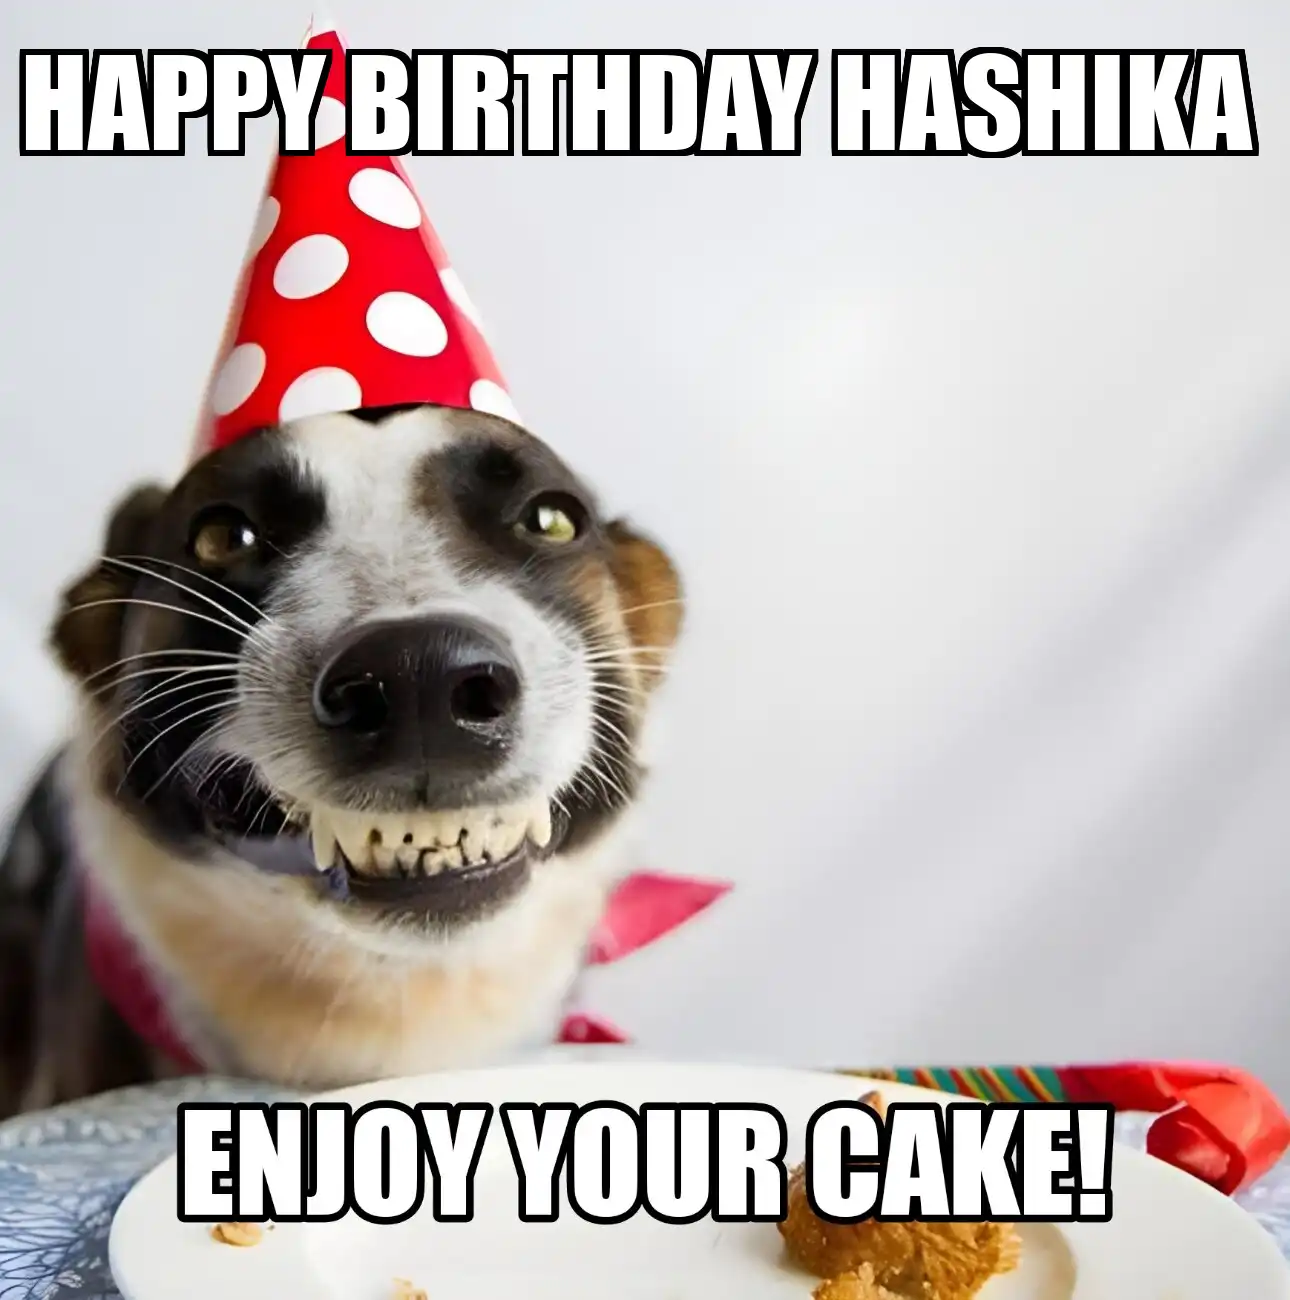 Happy Birthday Hashika Enjoy Your Cake Dog Meme